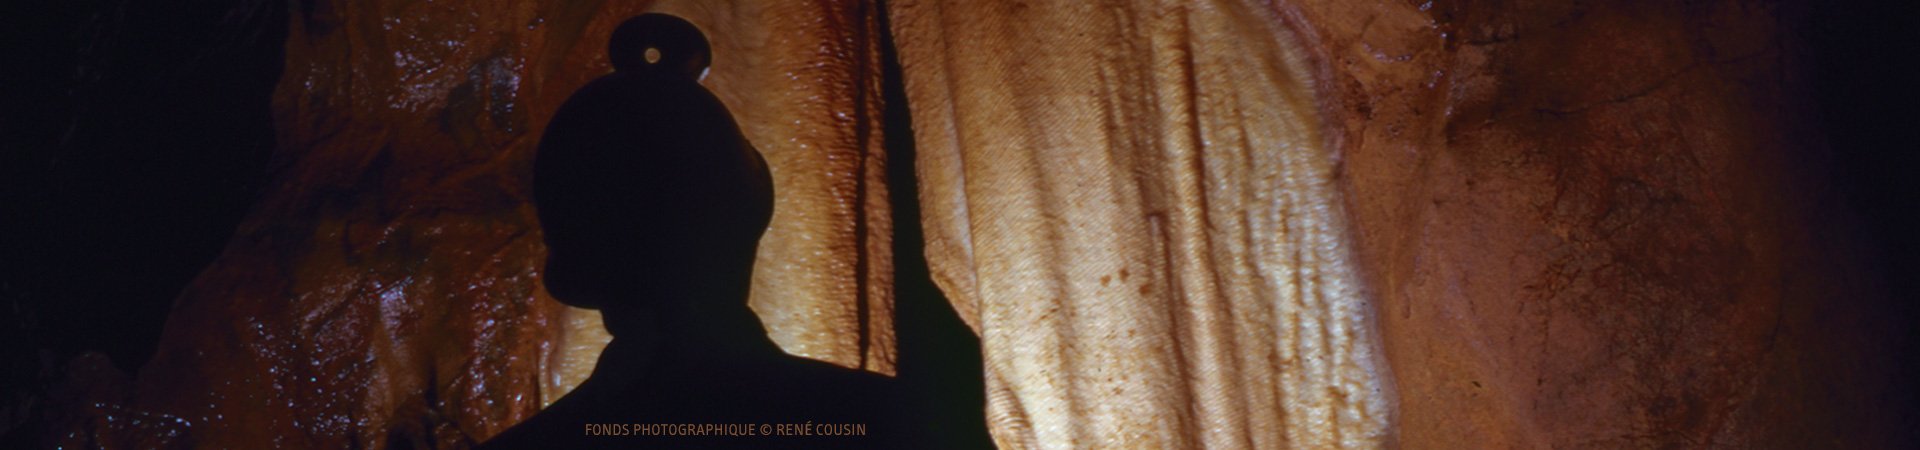 découverte de la Grotte Mayenne-Sciences à Saulges, 55 ans après